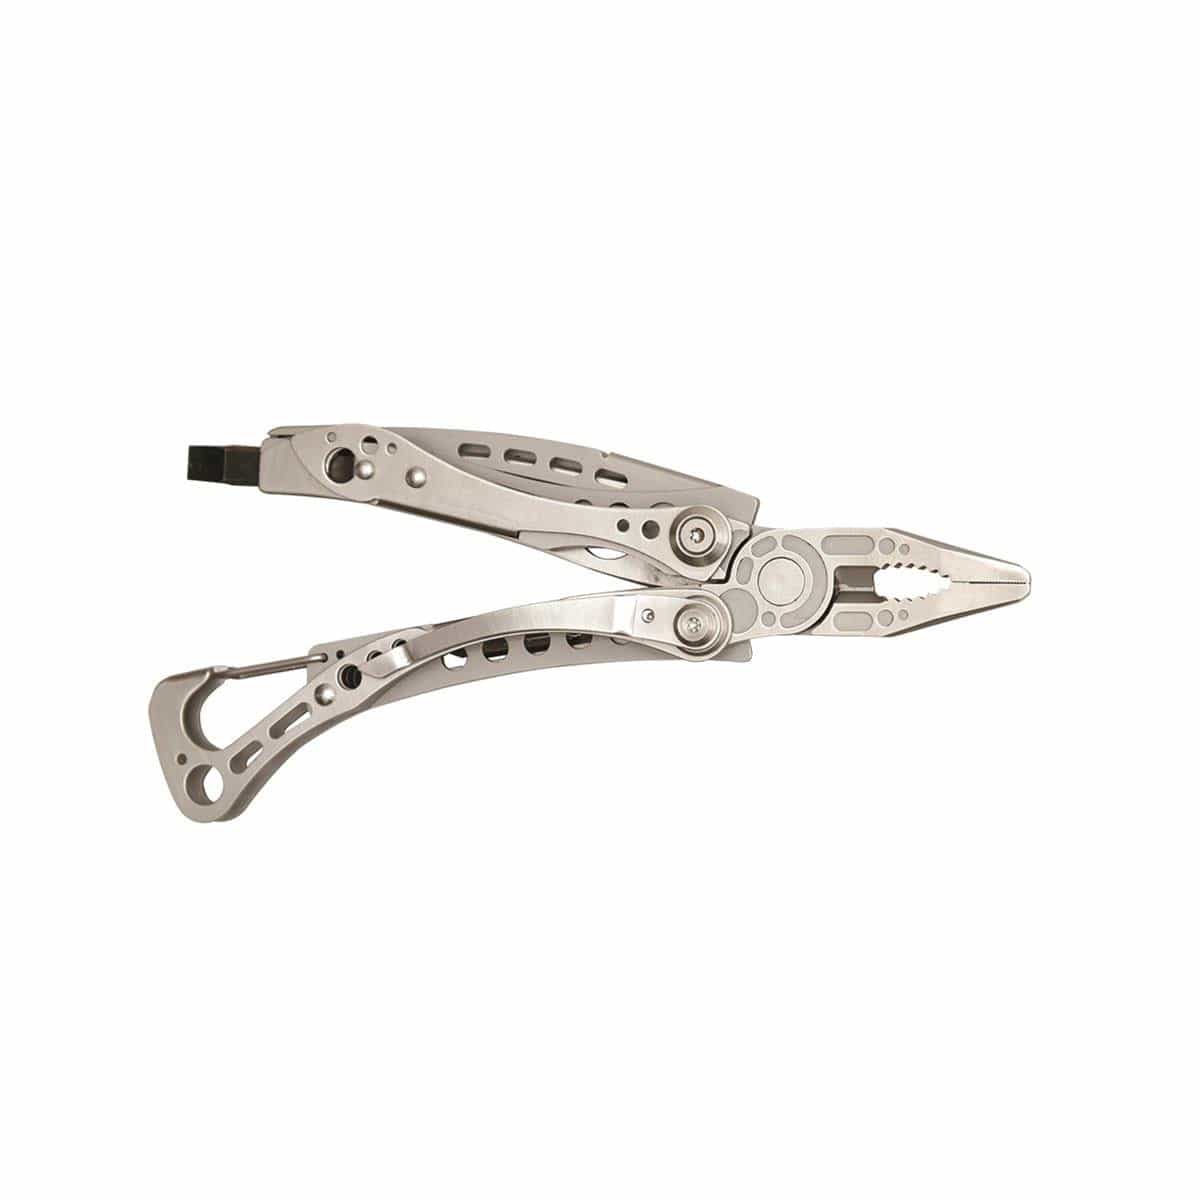 Skeletool® Multi-tool – Jetset Gear